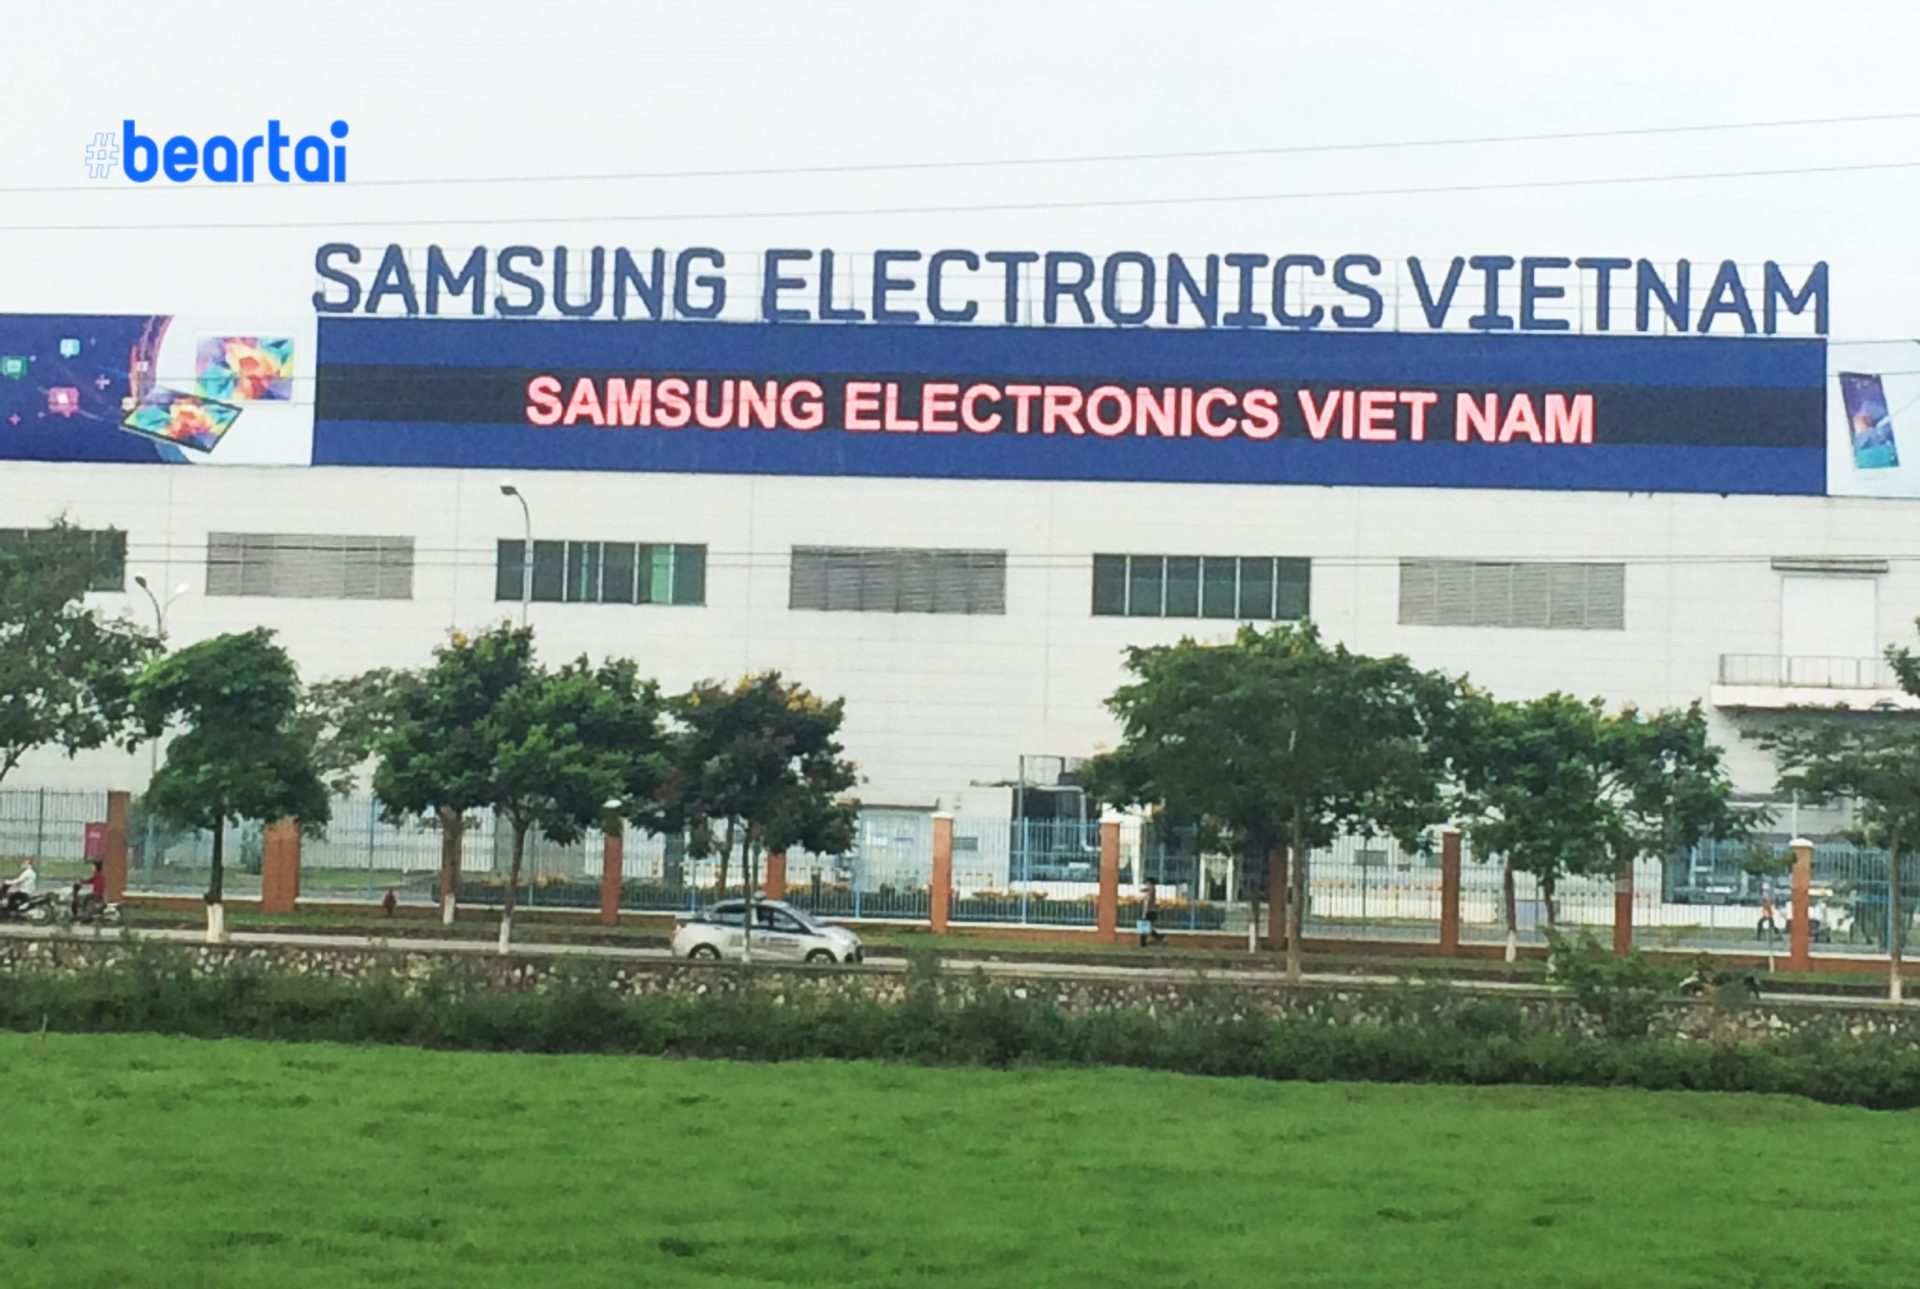 เวียดนามประสบปัญหาห่วงโซ่อุปทานจากไวรัสโคโรนาหวั่นผลิตโทรศัพท์ Samsung รุ่นใหม่ล่าช้า